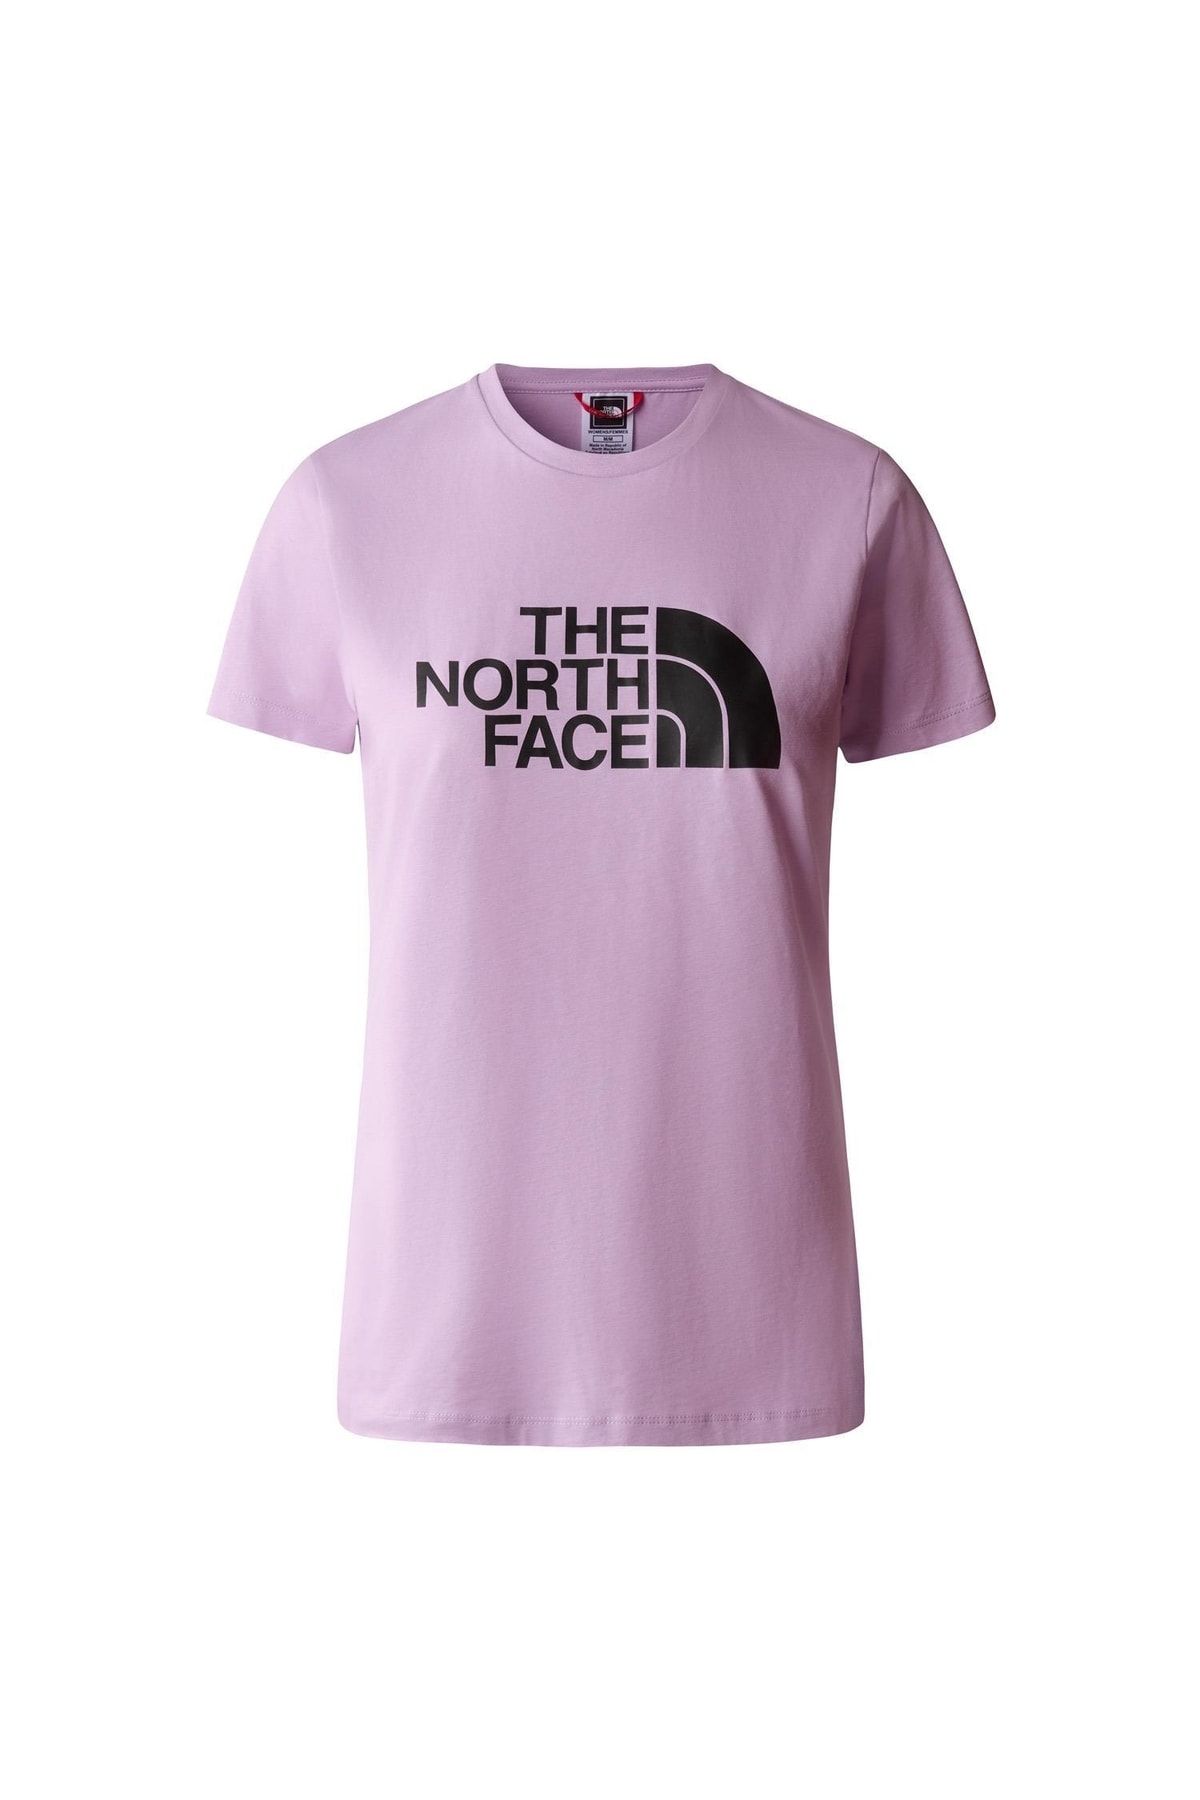 The North Face W S/s Easy Tee Kadın T-shirt Nf0a4t1qhcp1